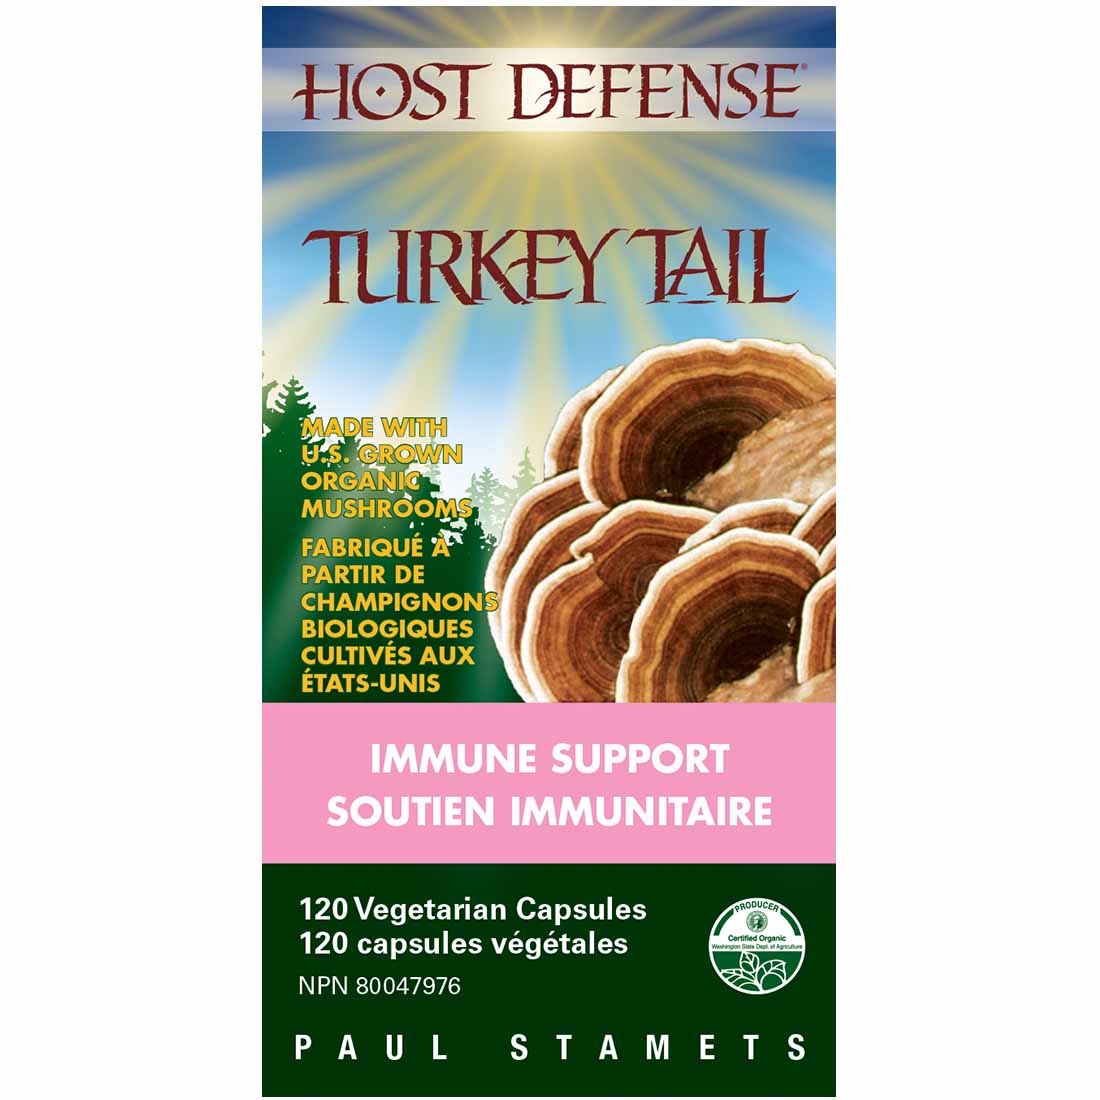 Host Defense Turkey Tail, Immune Support